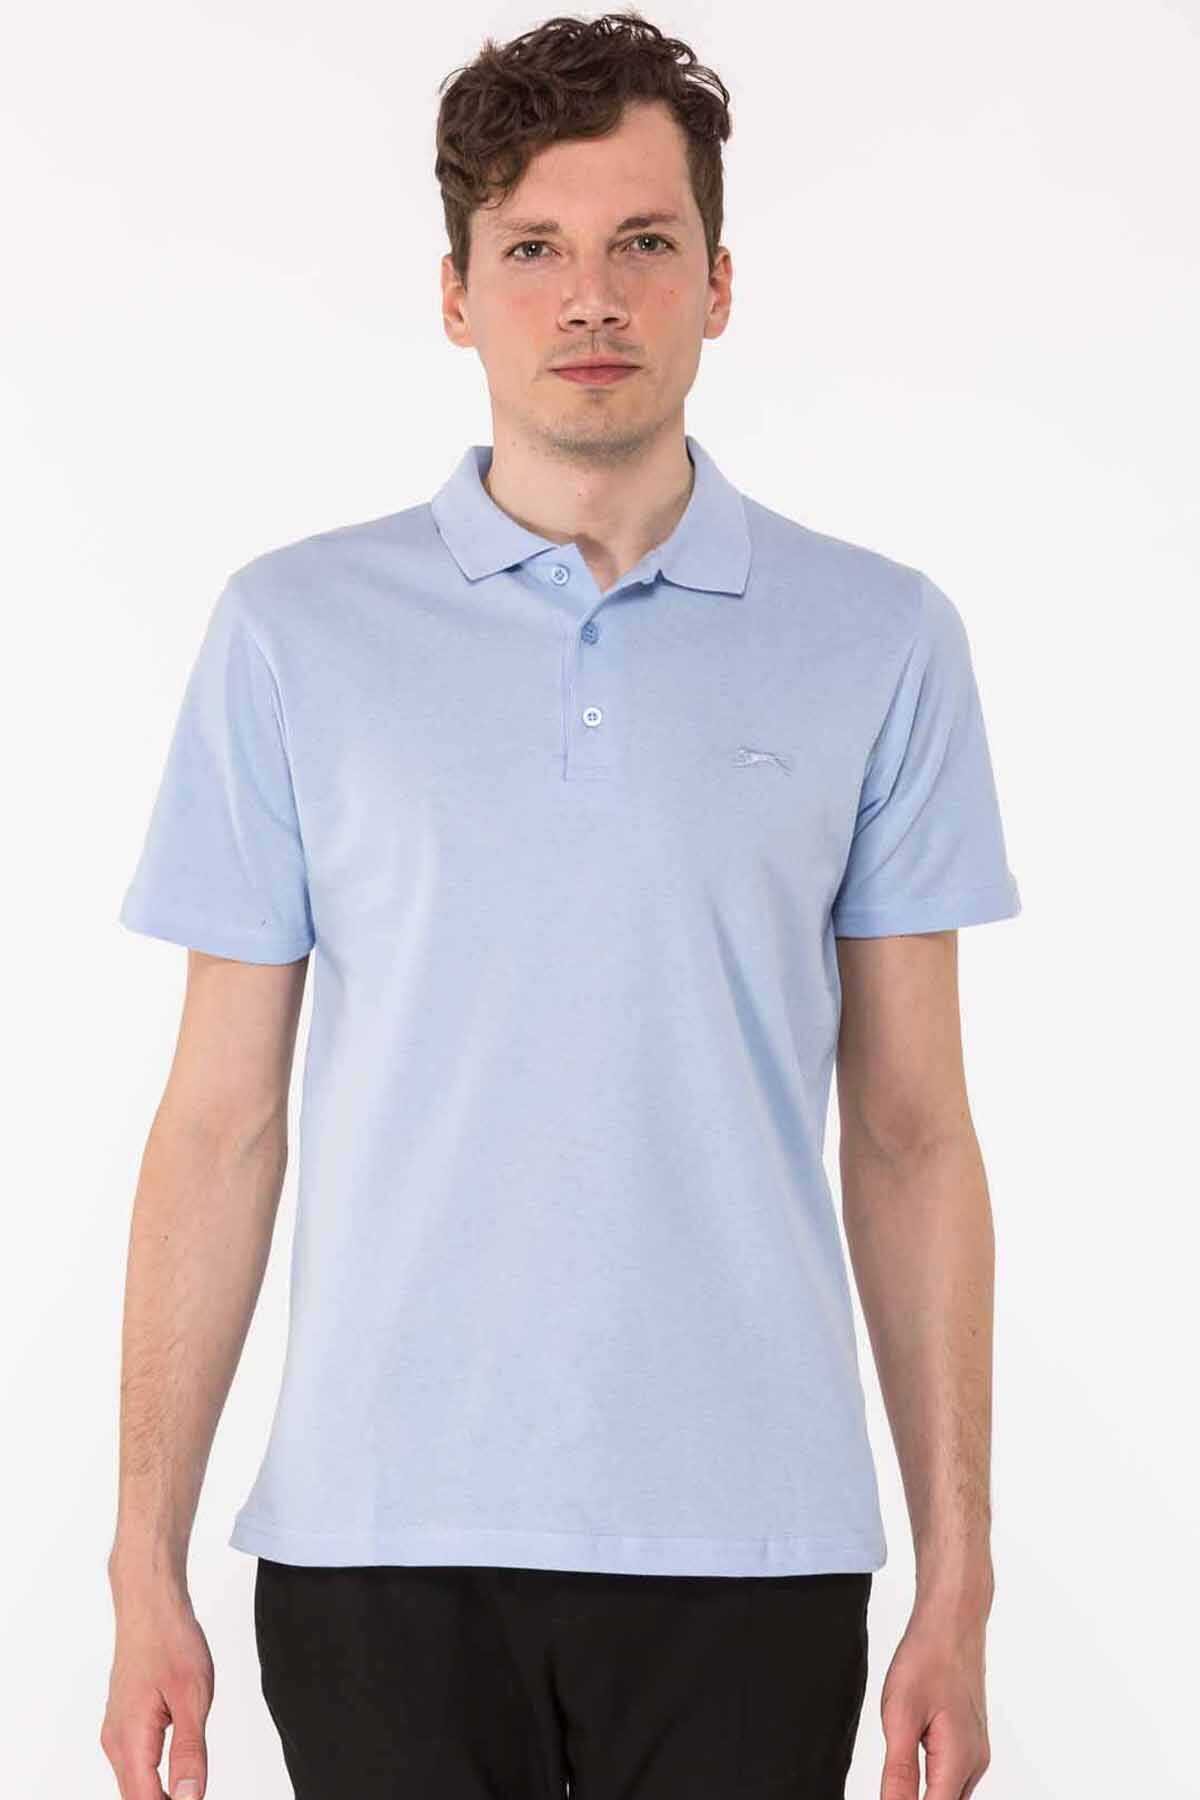 Slazenger - Slazenger SALVATOR Erkek Kısa Kollu T-Shirt Mavi